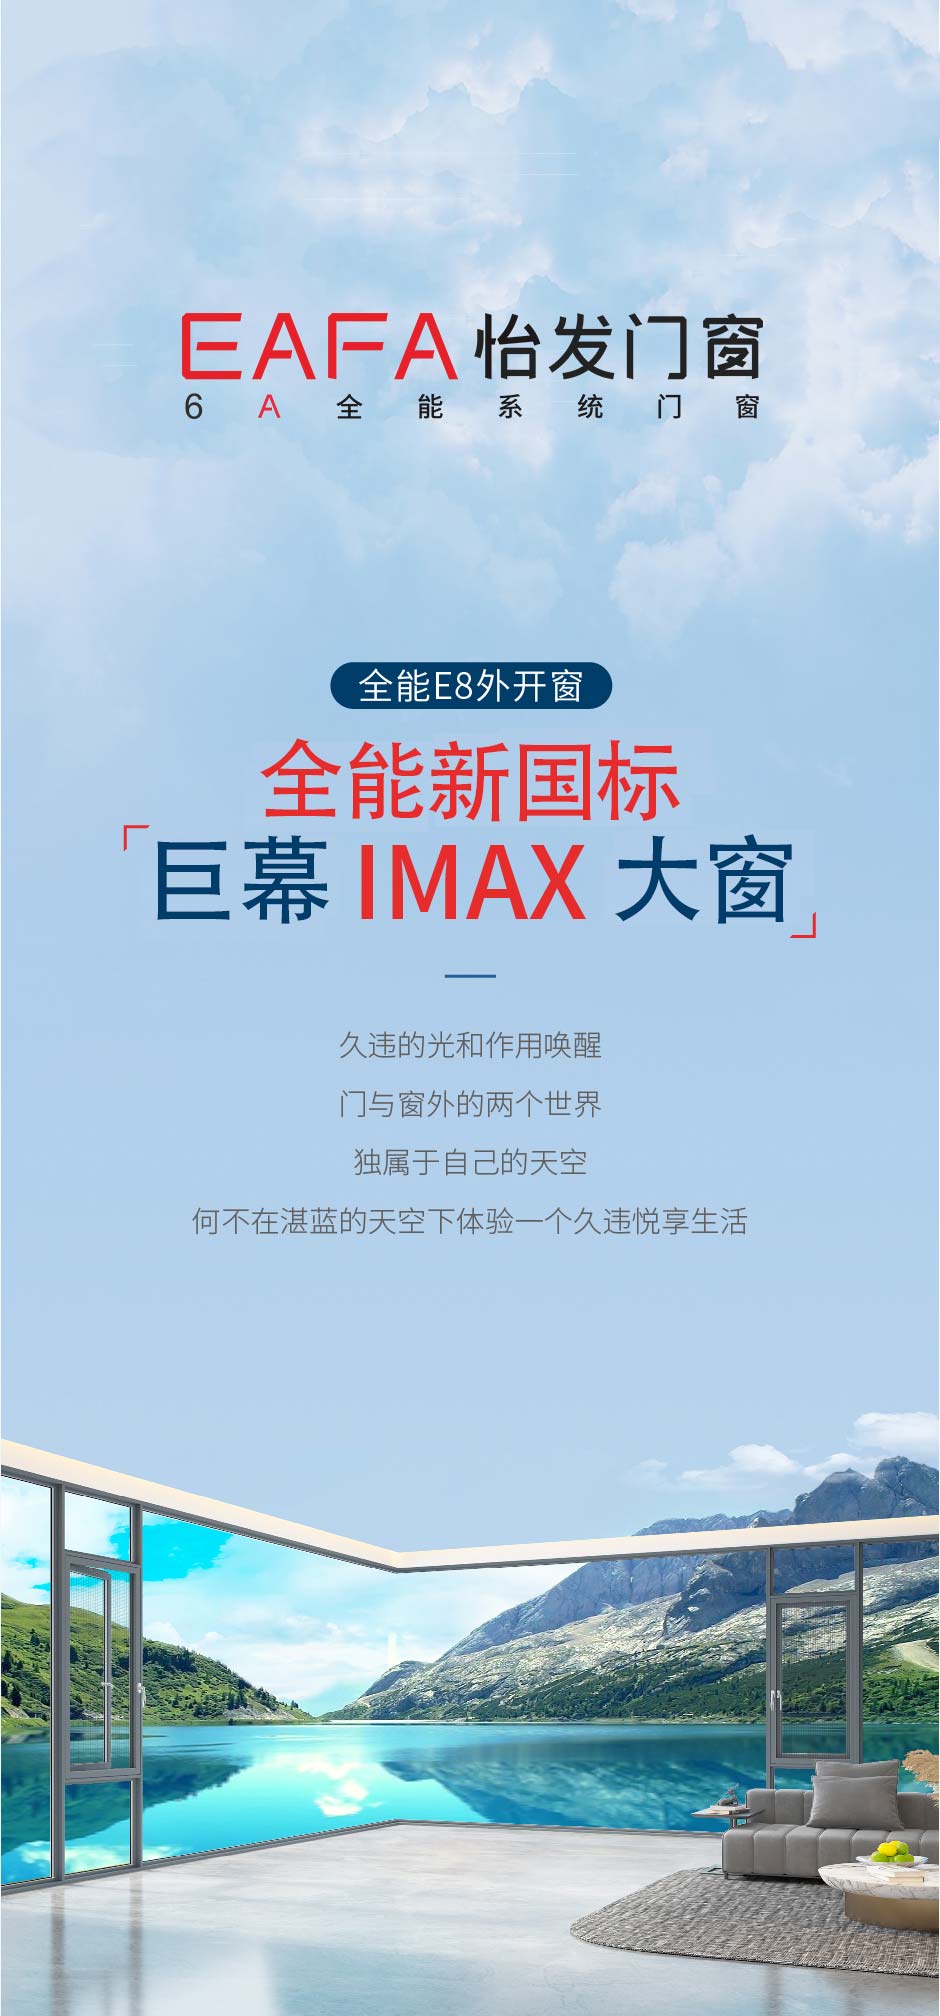 新品上市 | 怡发门窗巨幕IMAX大窗 实力演绎更多可能